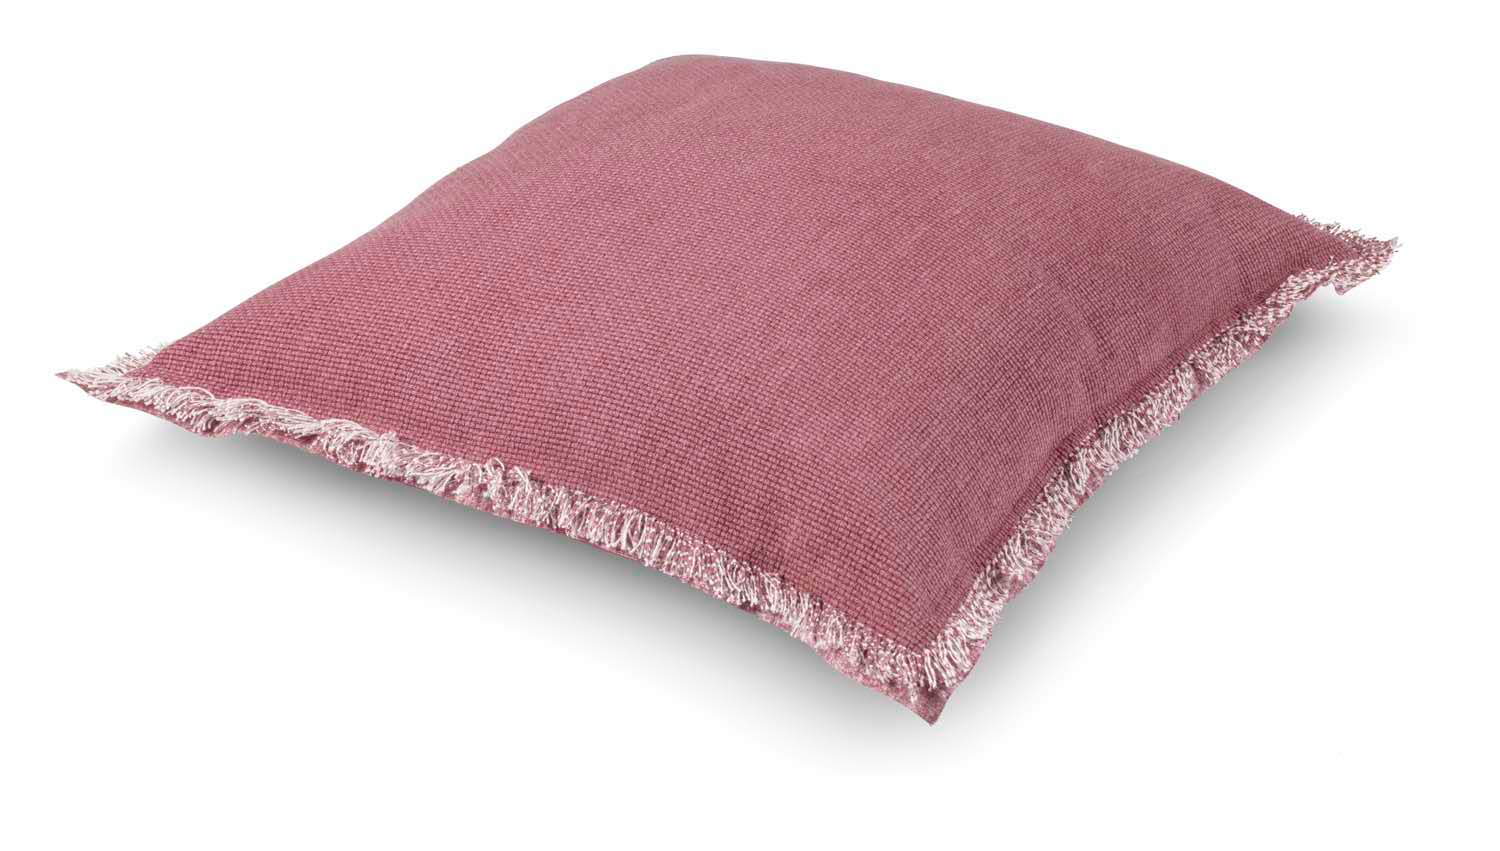 BURTO - Sierkussen XL - 70x70 cm - pruim  - roze - gewassen katoen - lounge kussen